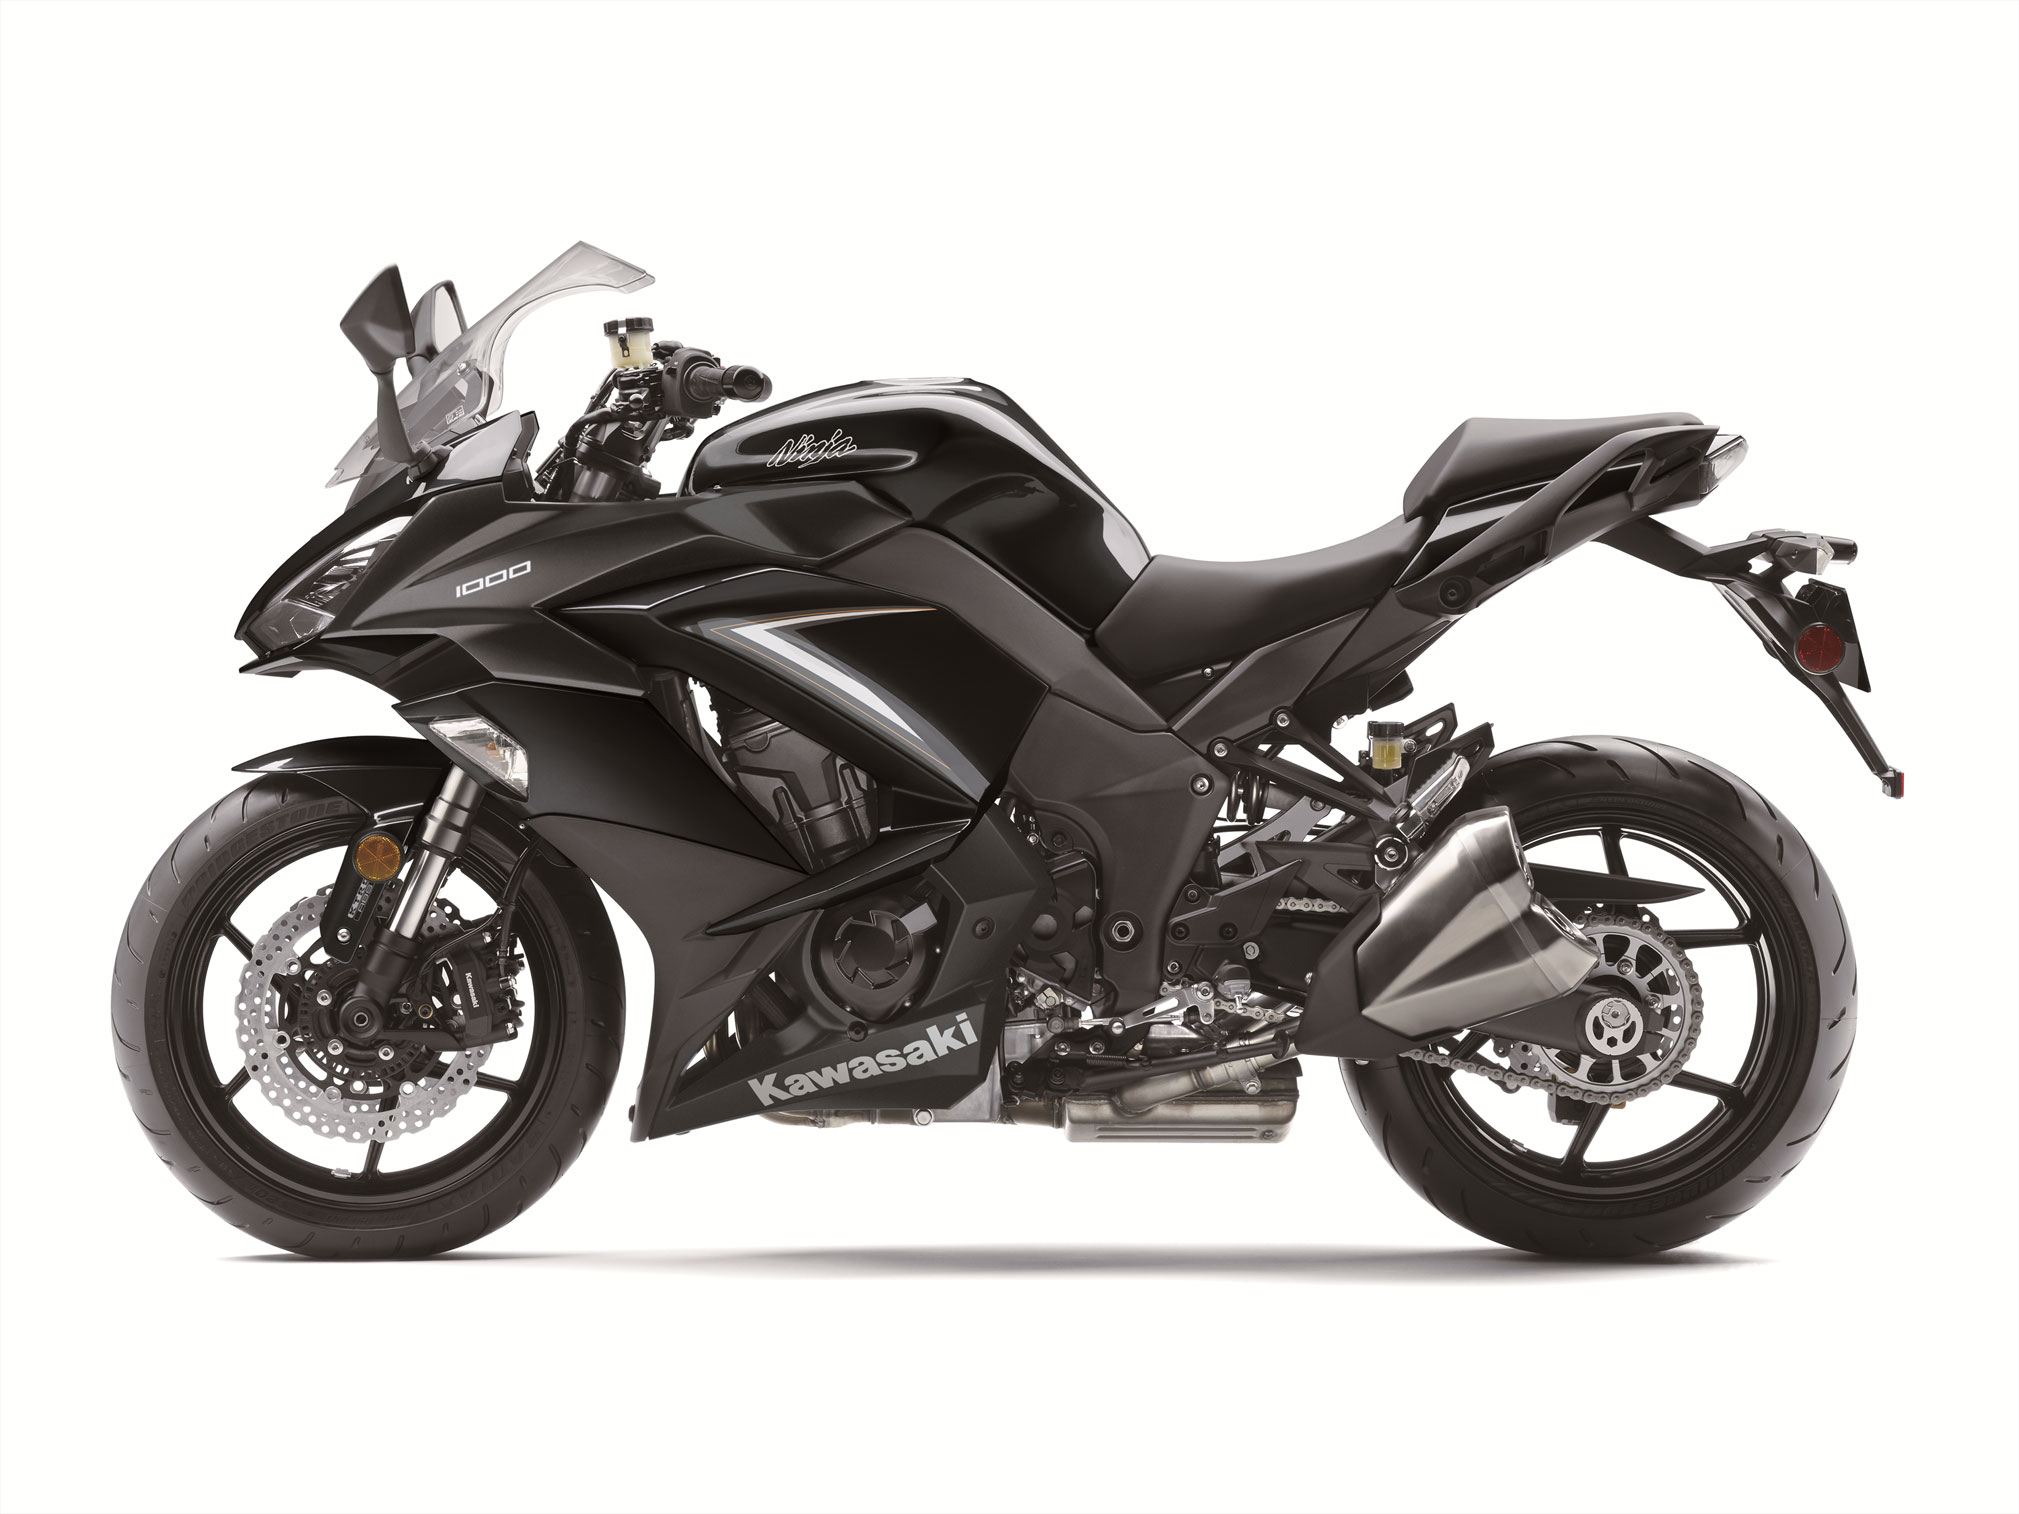 2019 Kawasaki Ninja 1000 ABS Guide • Total Motorcycle